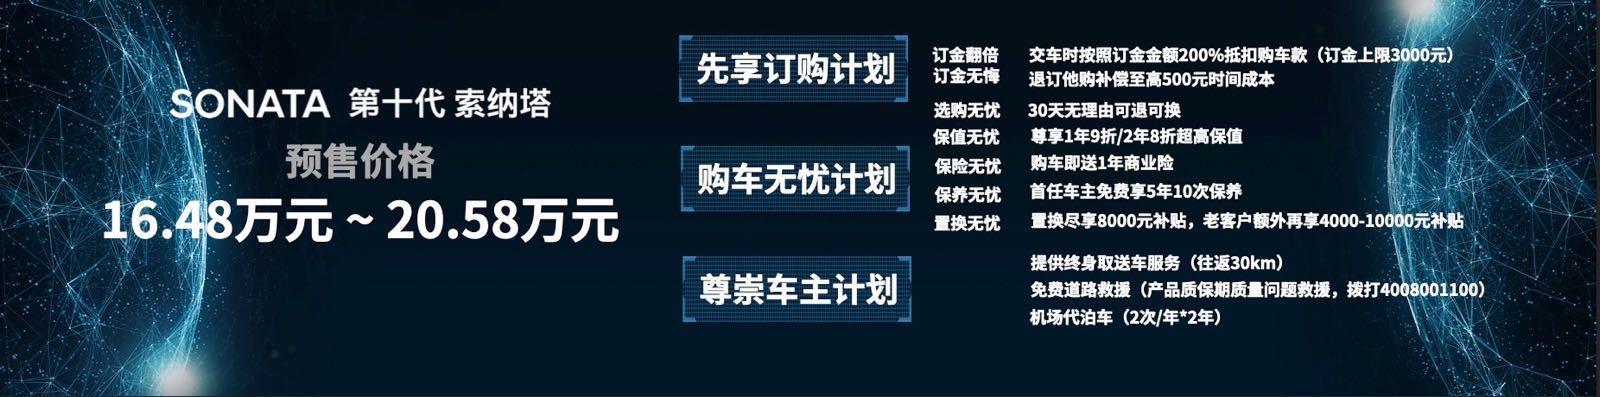 北京现代第十代索纳塔启动预售，官方预售价16.48-20.58万元